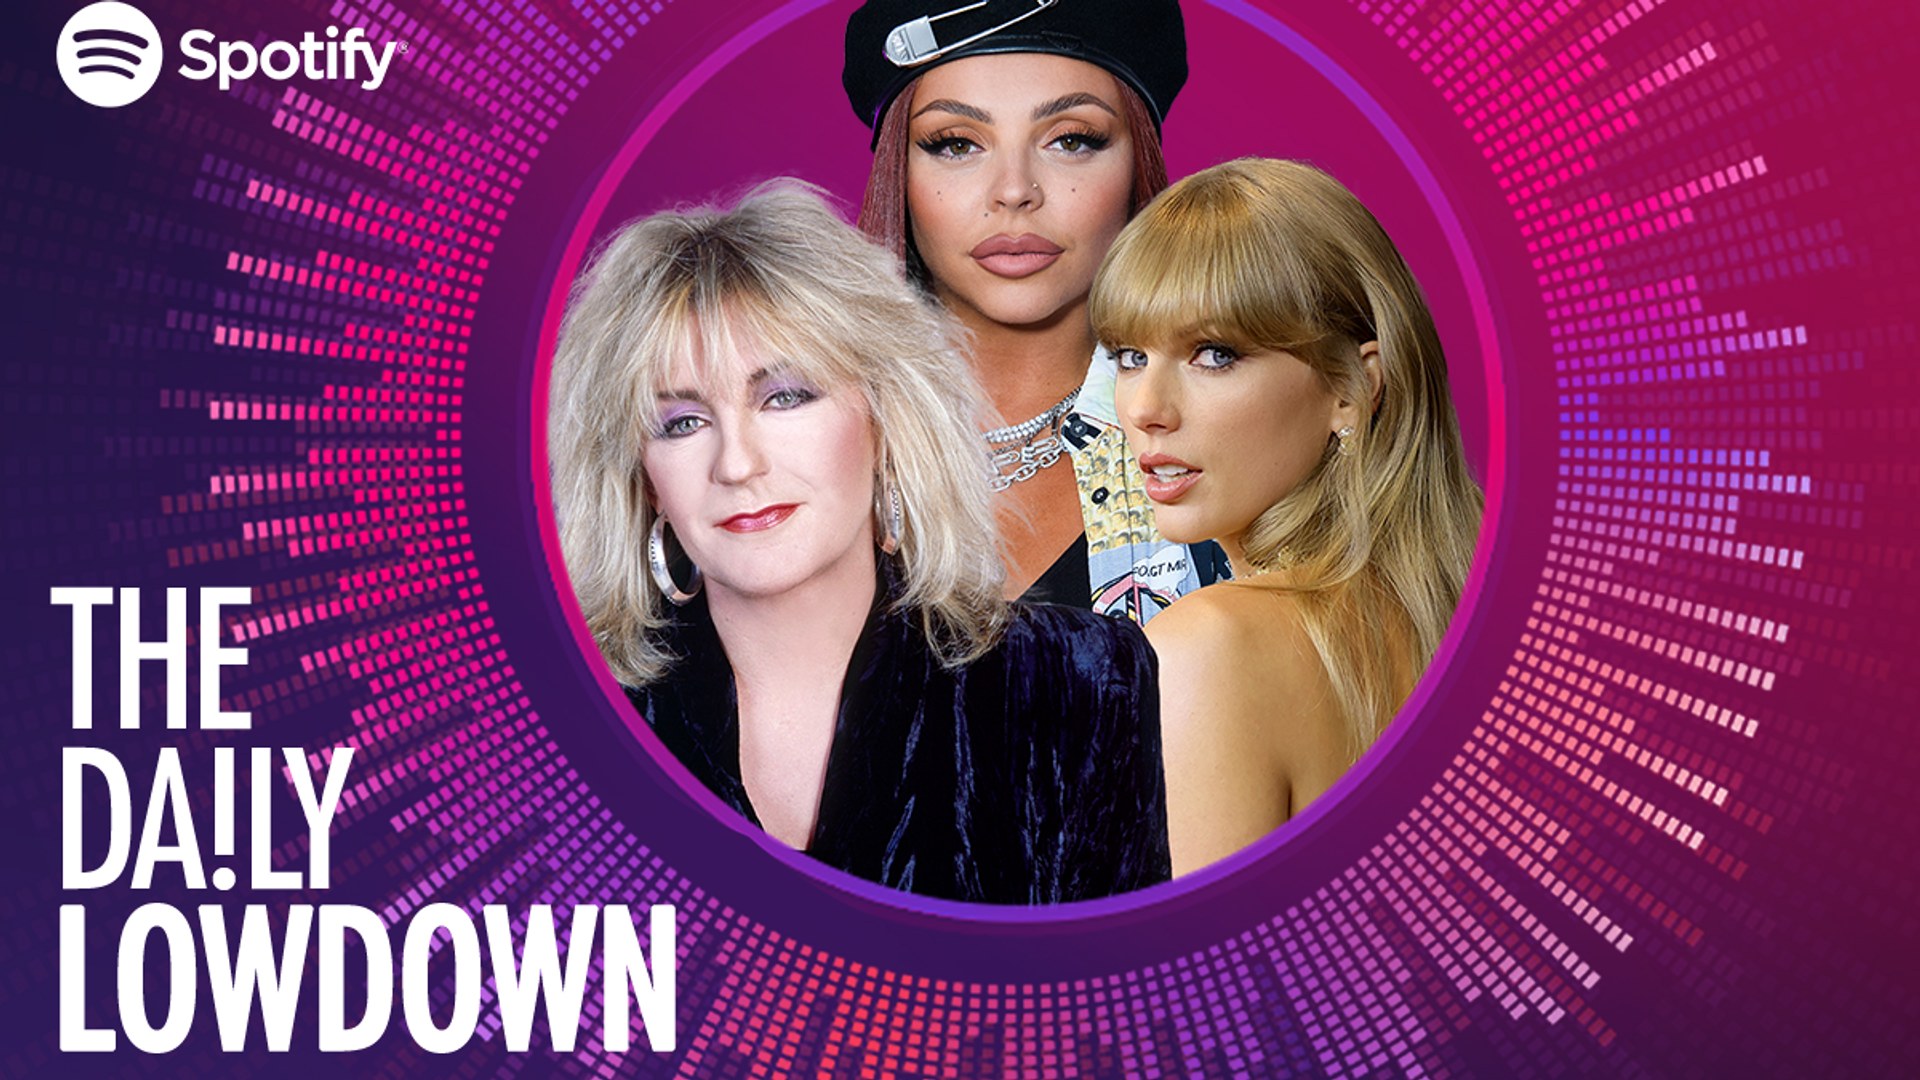 Christine McVie, Jesy Nelson, Taylor Swift in Daily Lowdown logo